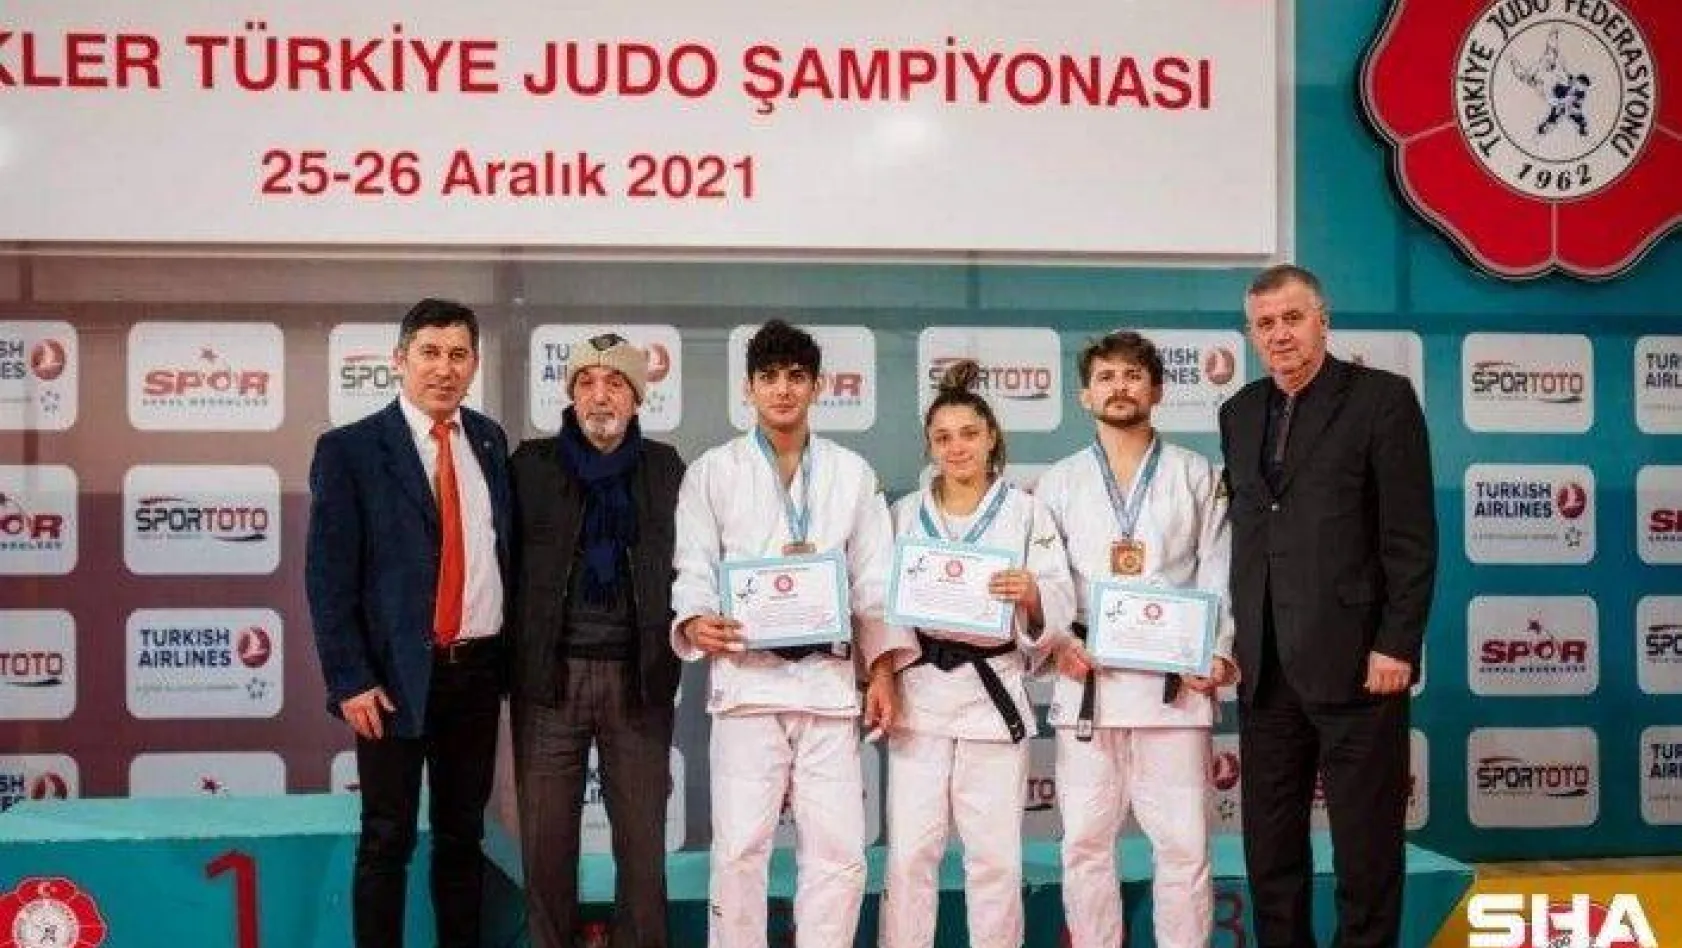 Osmangazili judoculardan bronz madalya